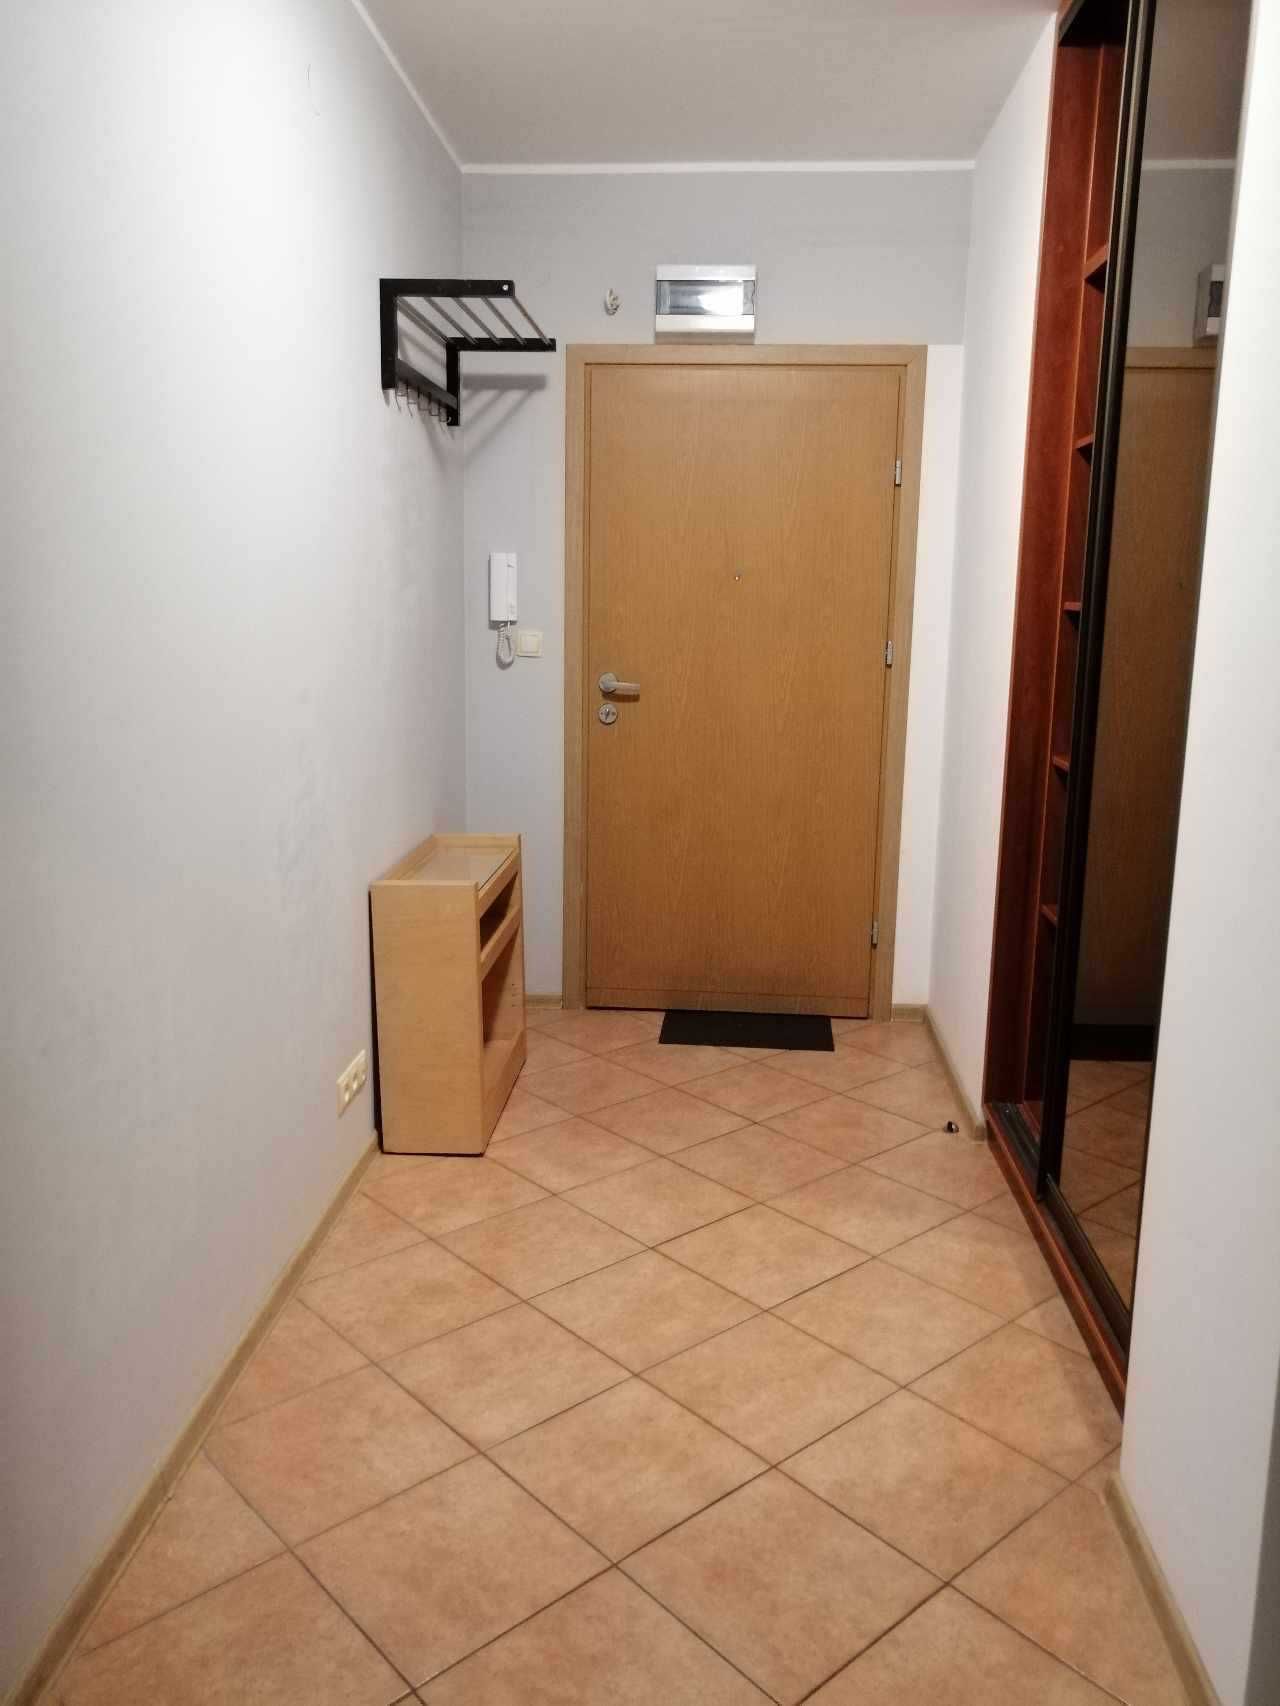 Mam na wynajem mieszkanie Warszawa Wesoła 2balkony+garaż,winda